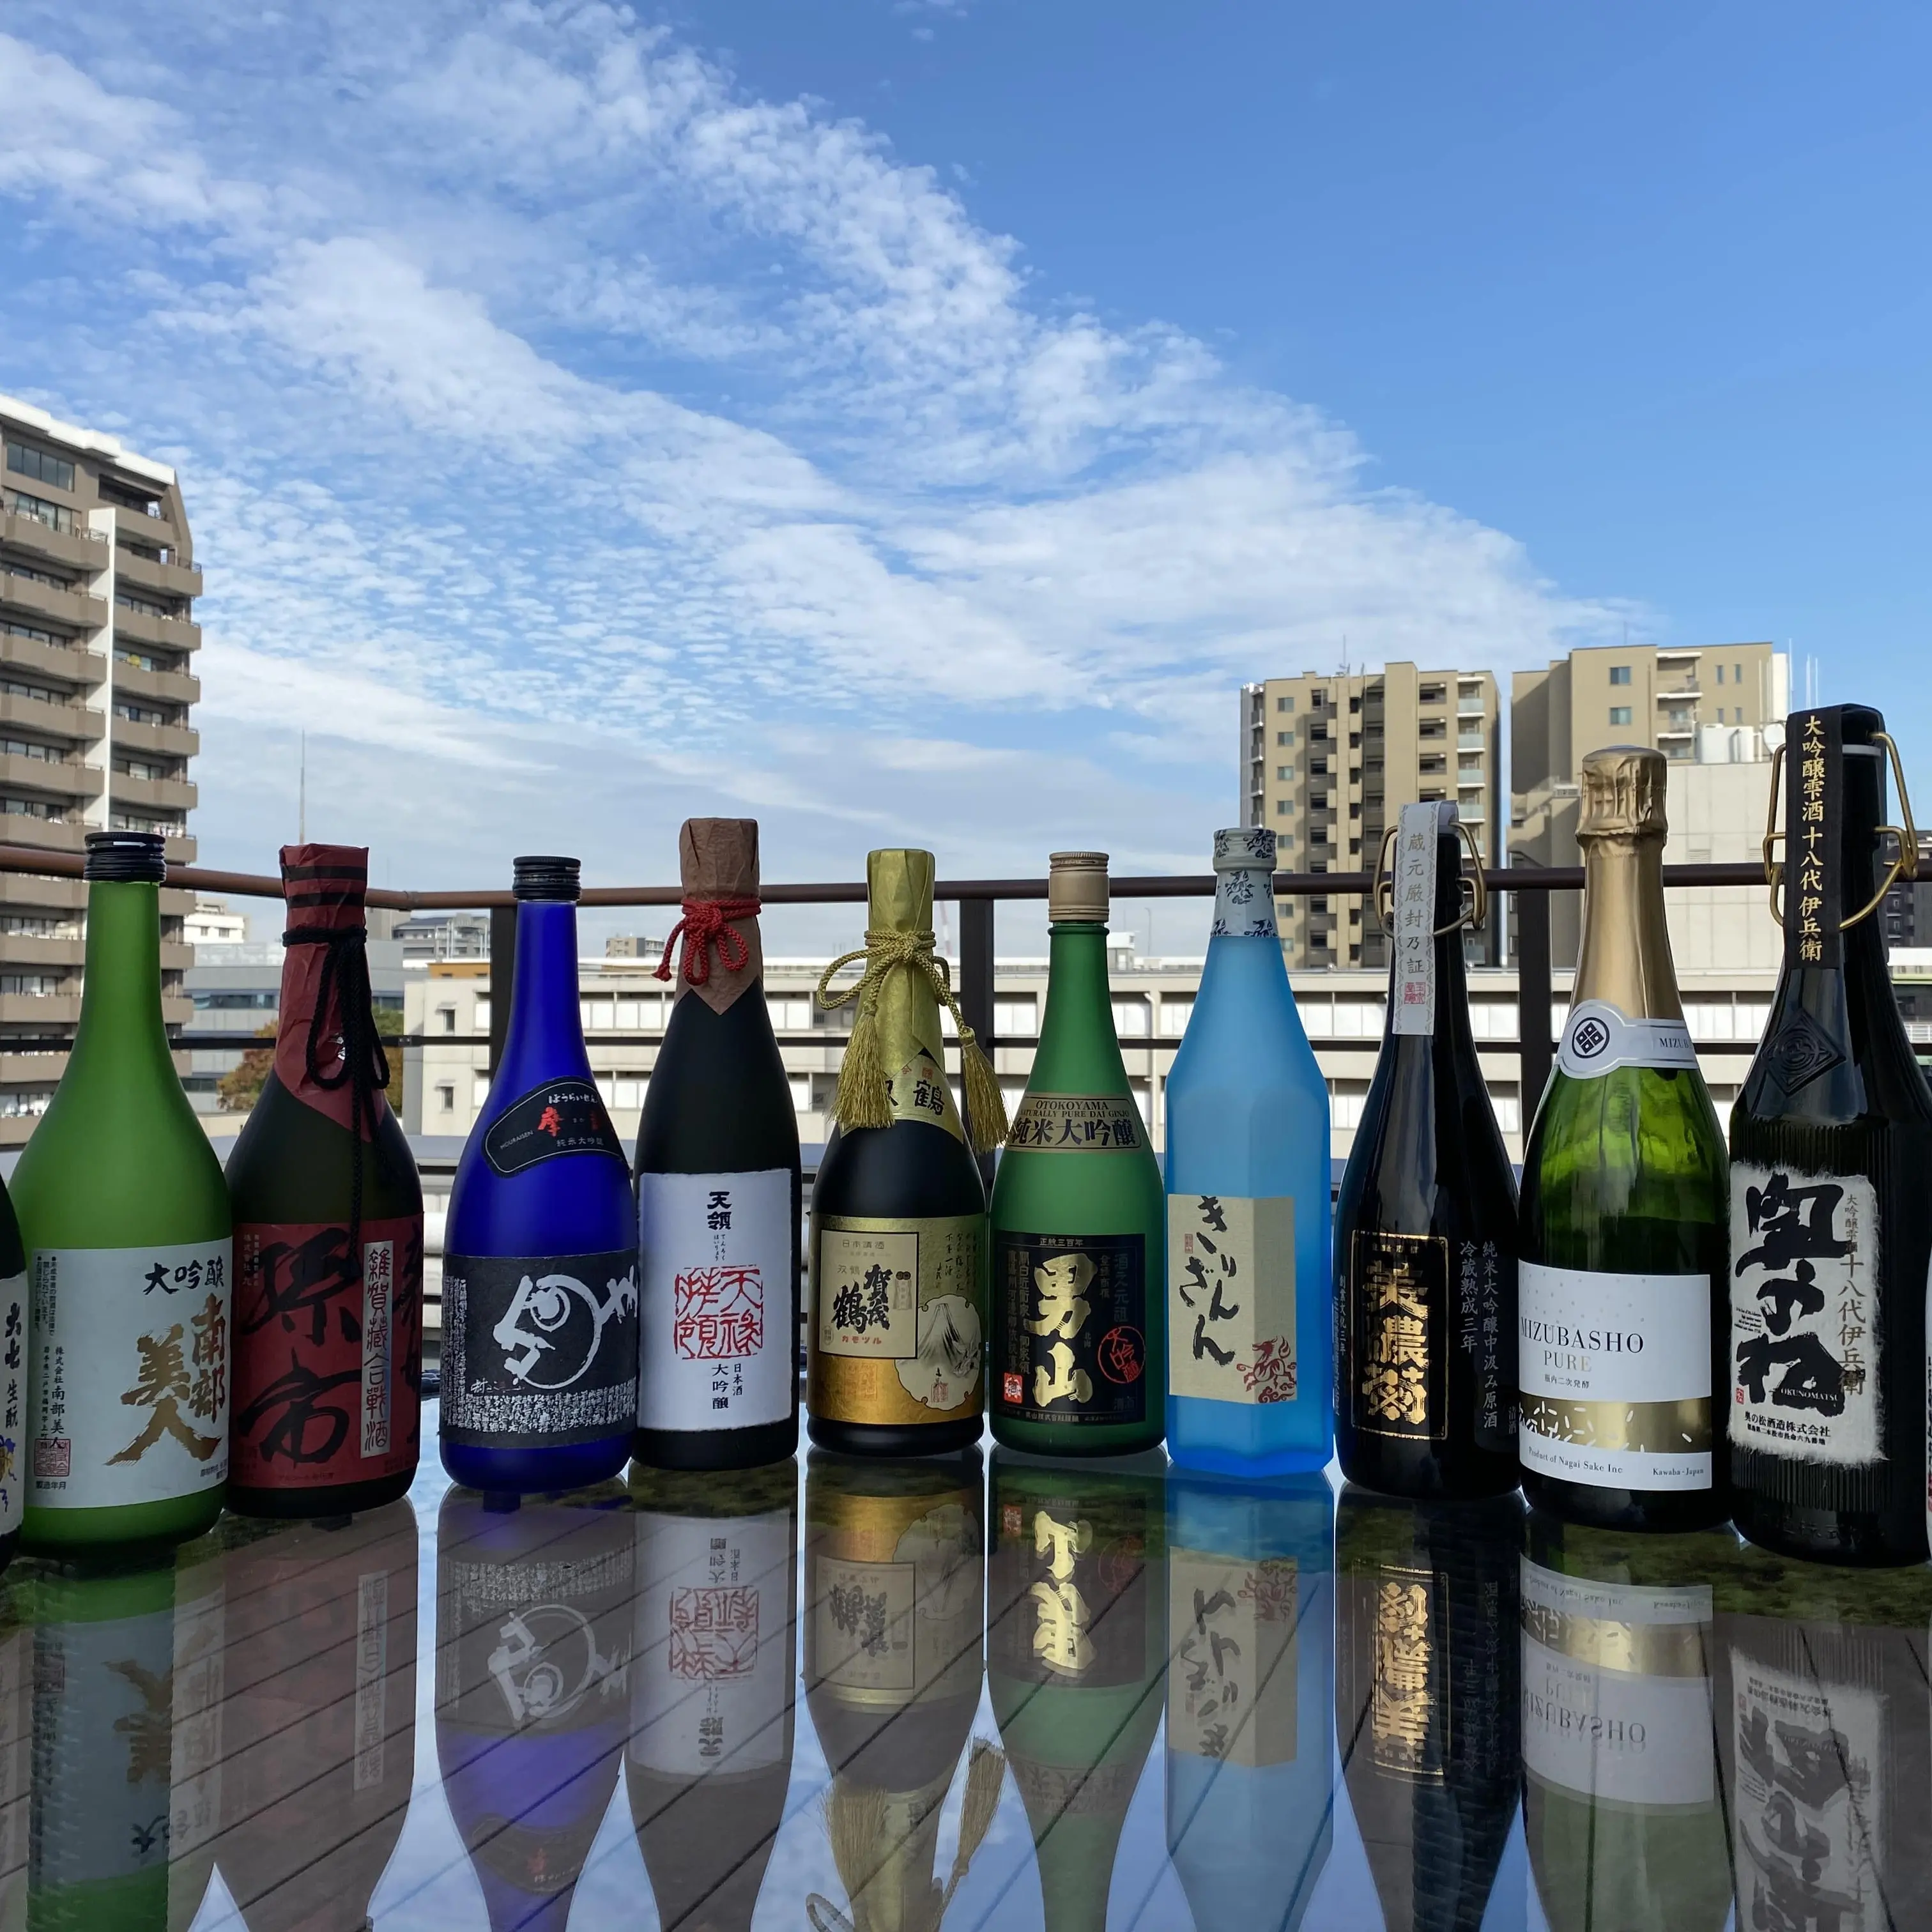 Ароматизированное японское сакэ, бутилированное рисовое вино для импортеров ликеров